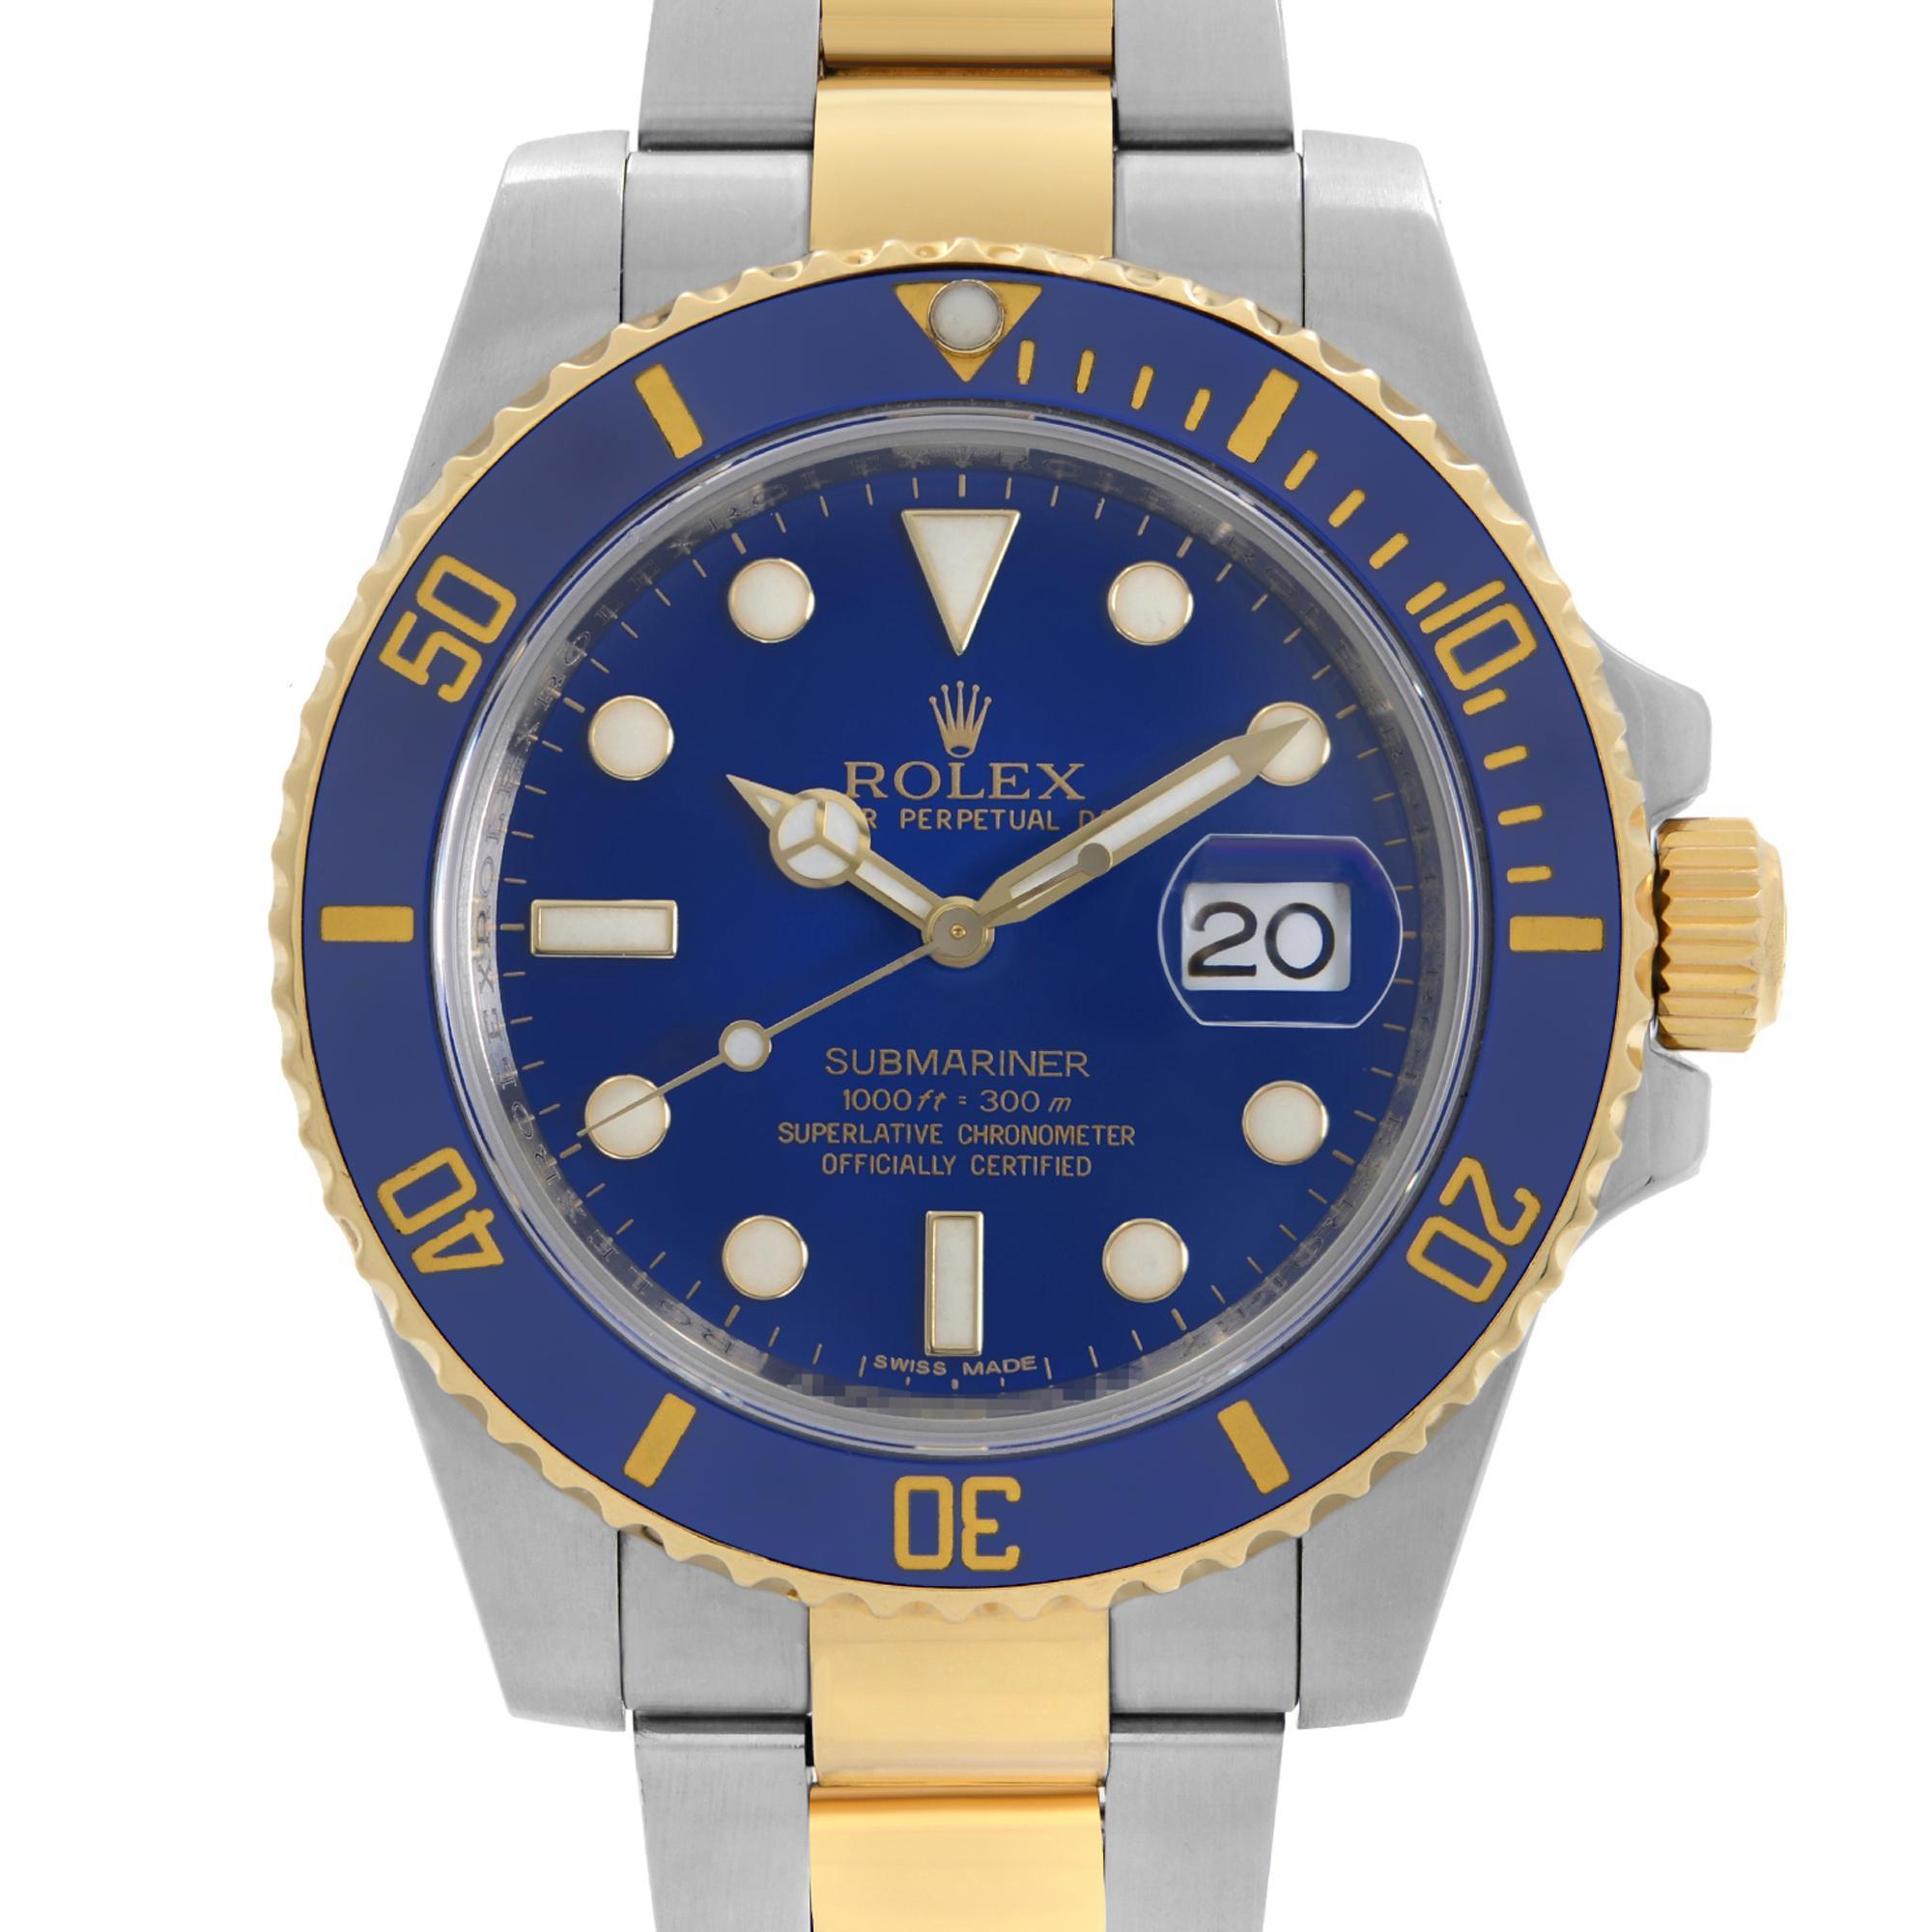 Pre-owned Rolex Submariner 40mm 18K Gold Stahl Keramik blaues Zifferblatt automatische Uhr 116613LB. Dieser Zeitmesser wurde im Jahr 2009 produziert und wird von einem automatischen Uhrwerk angetrieben: Edelstahl rundes Gehäuse, und Stahl mit 18k